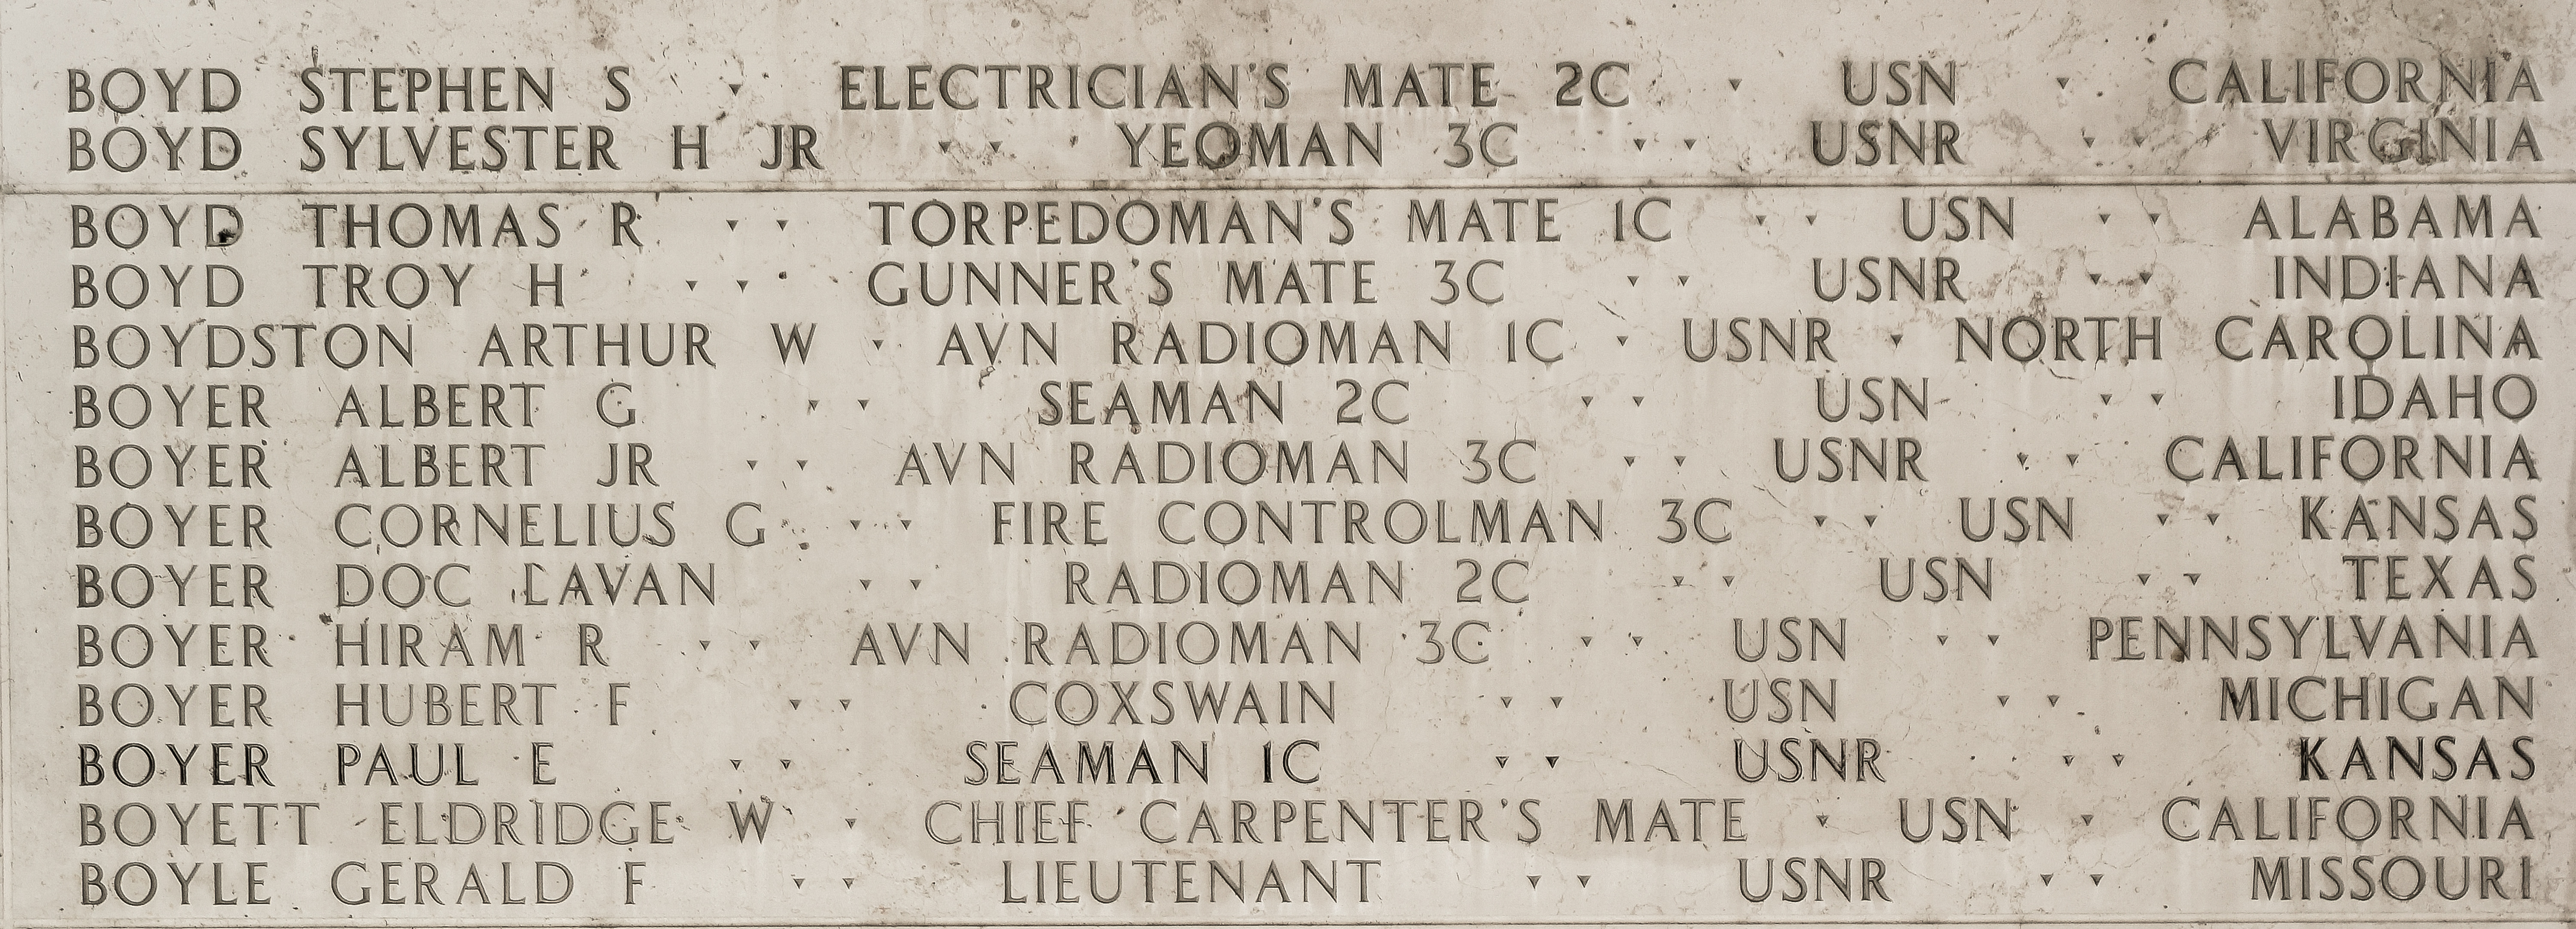 Arthur W. Boydston, Aviation Radioman First Class